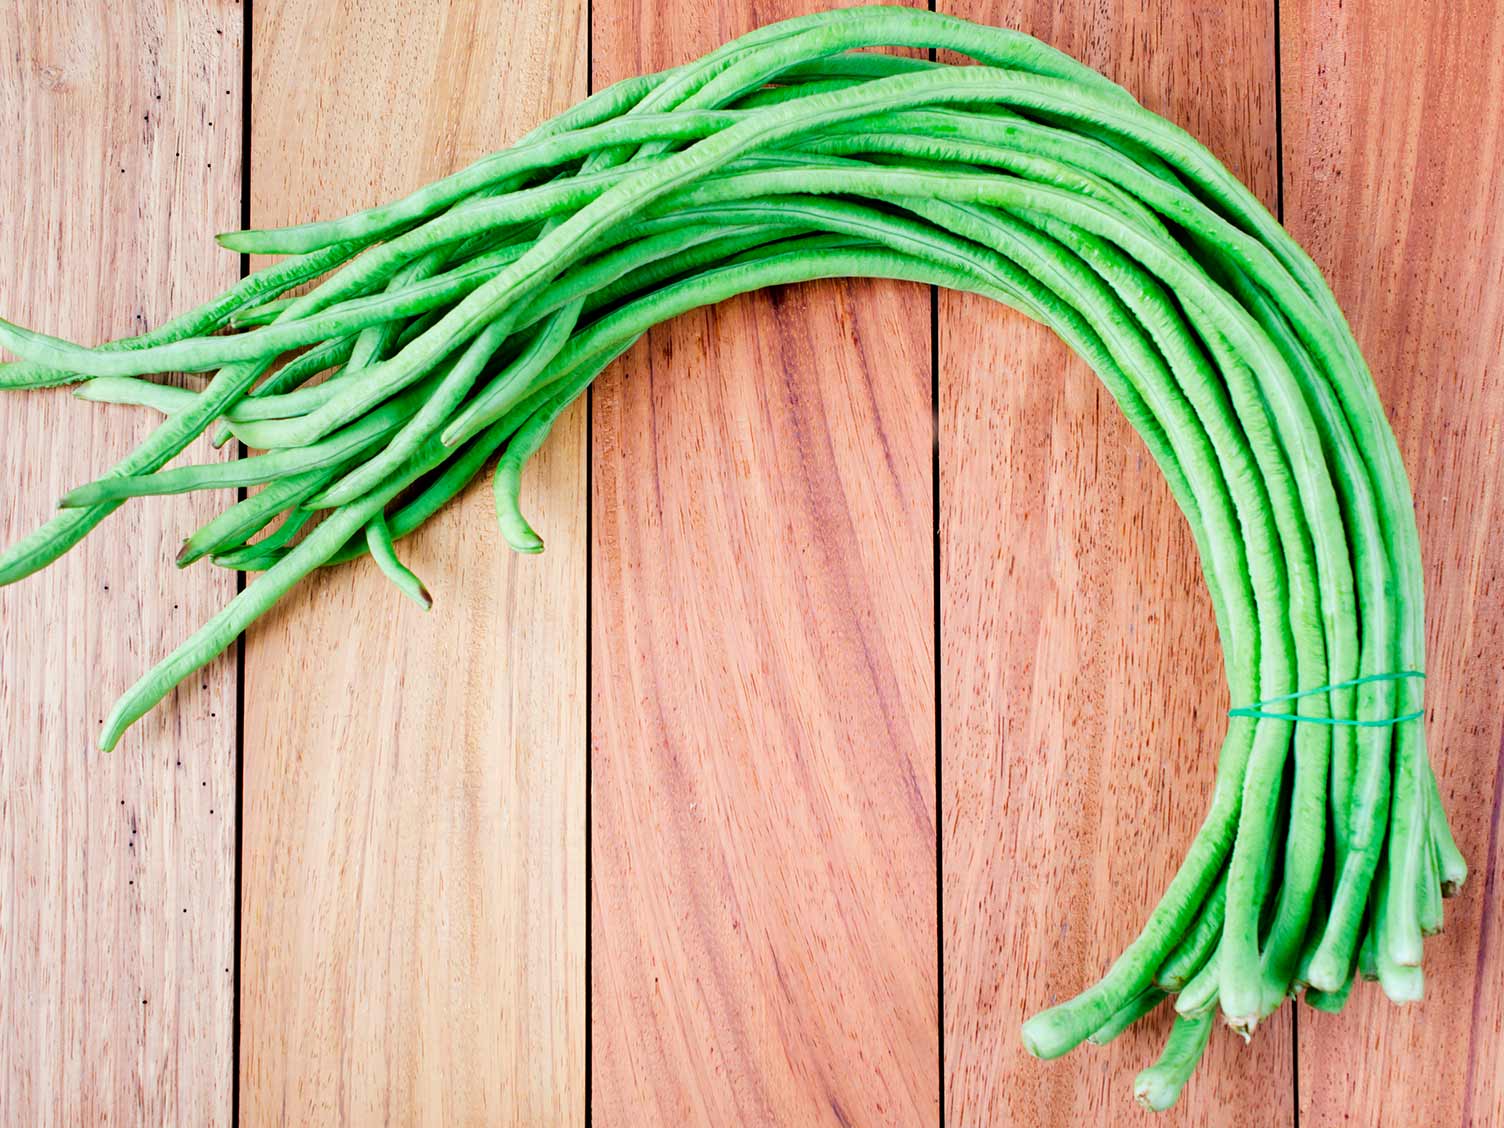 Yard-long beans vegetable